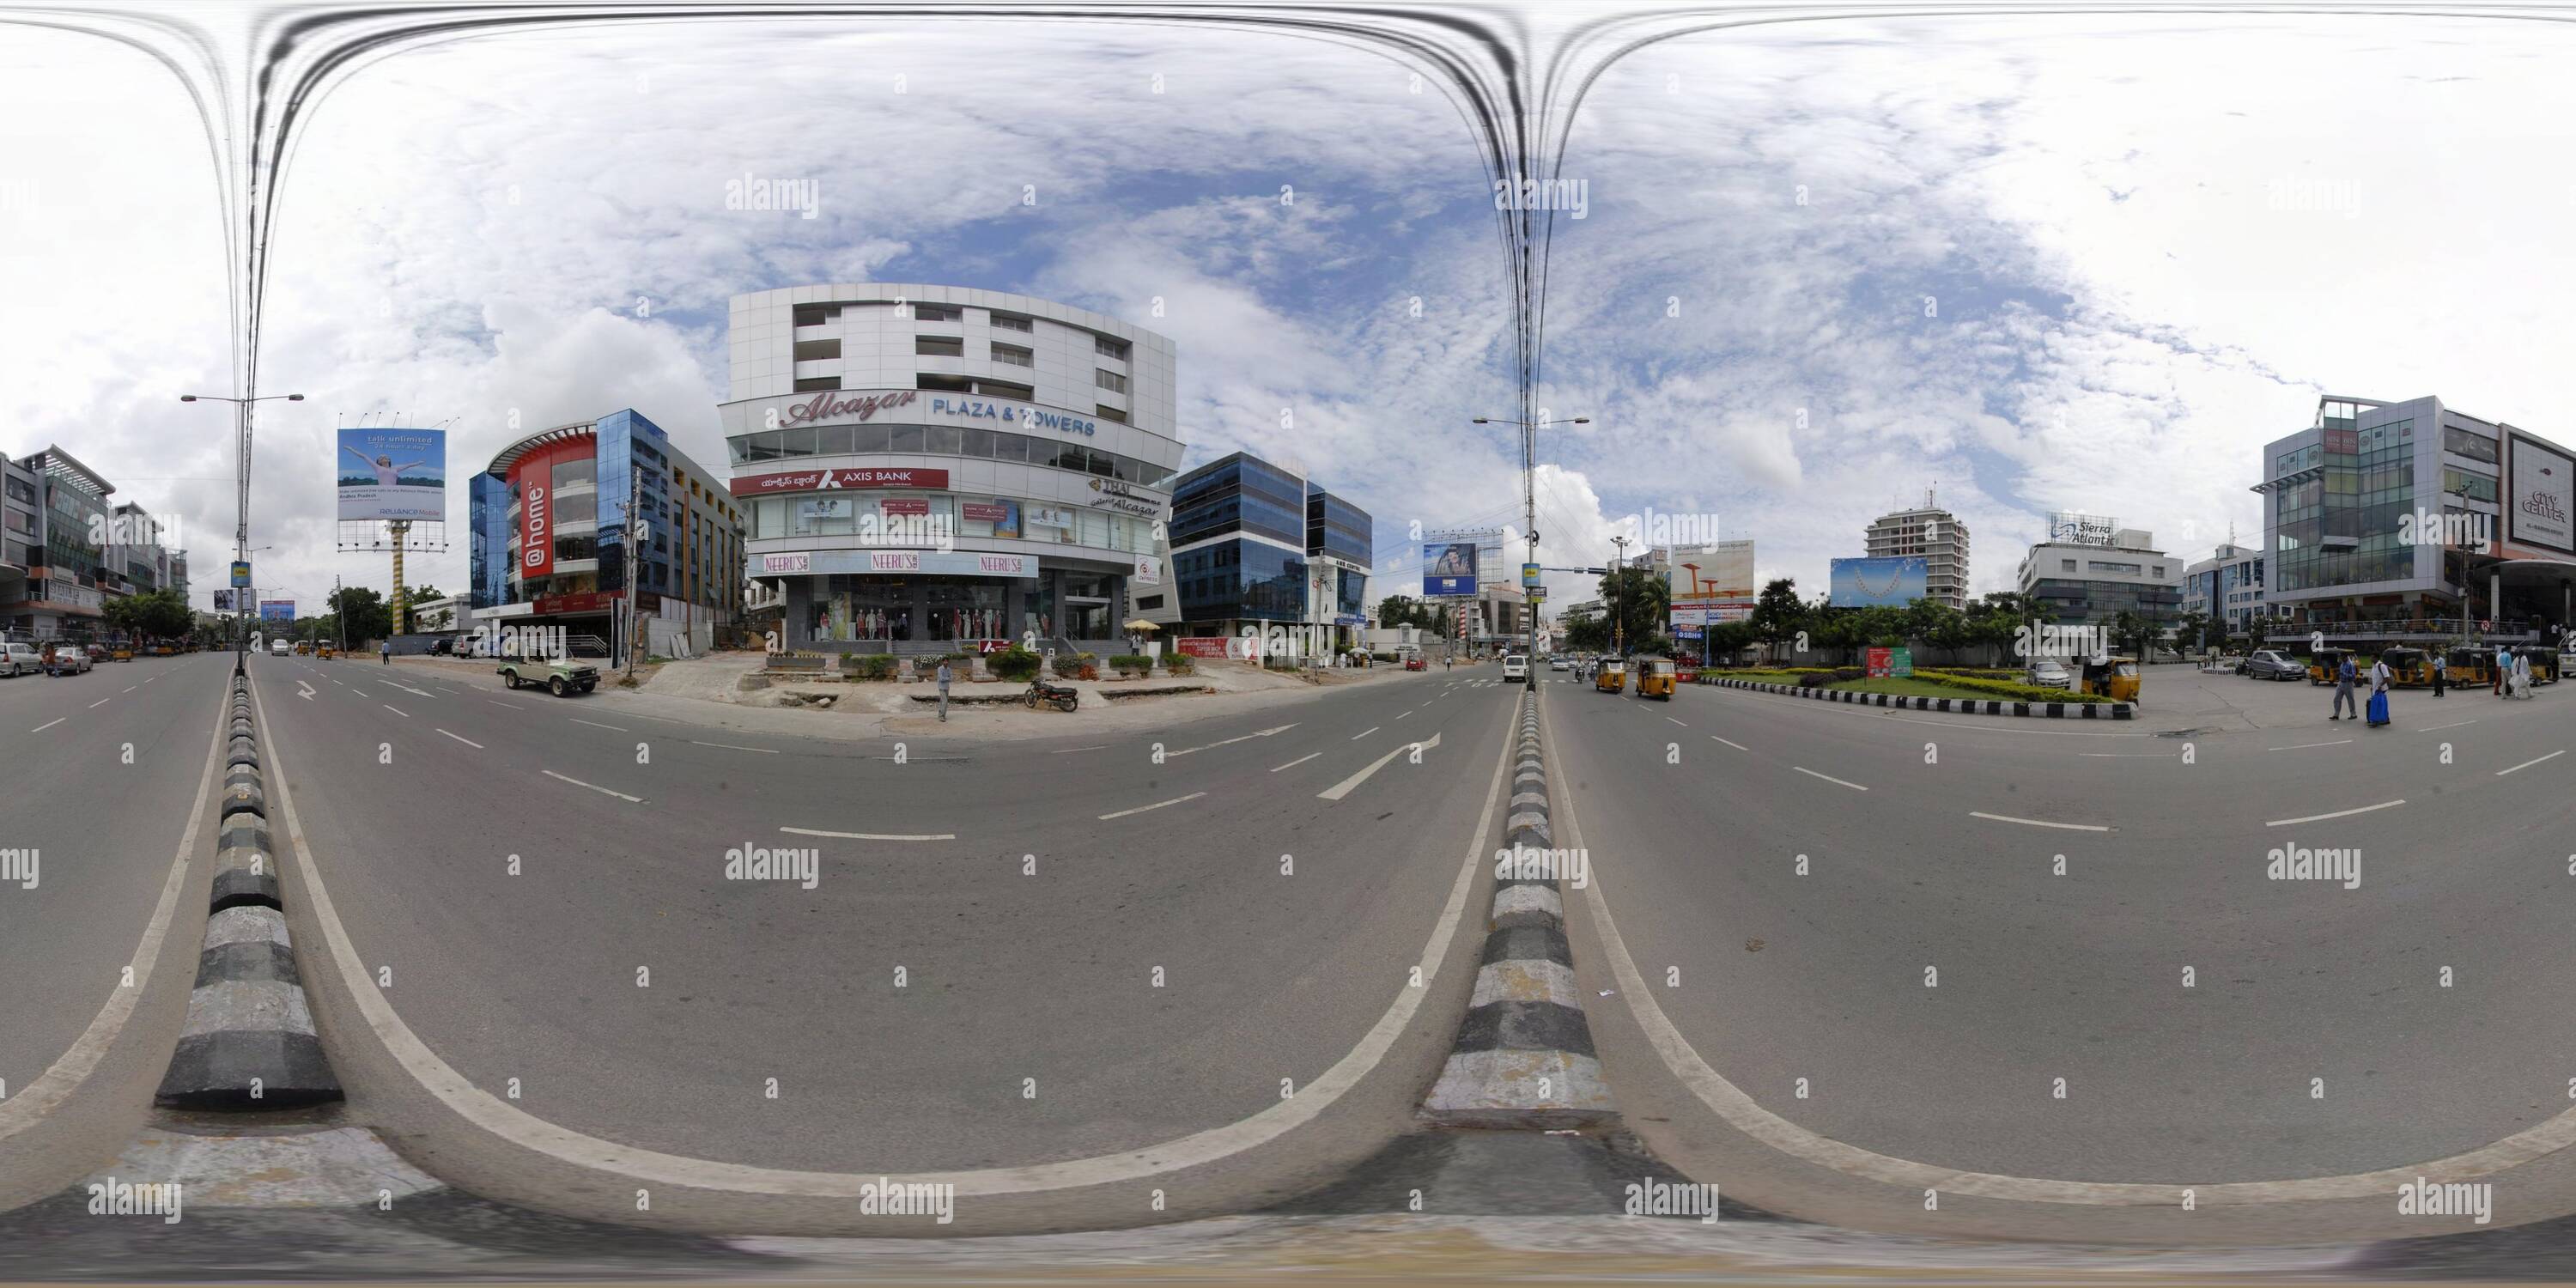 Vue panoramique à 360° de Centre-ville-mall